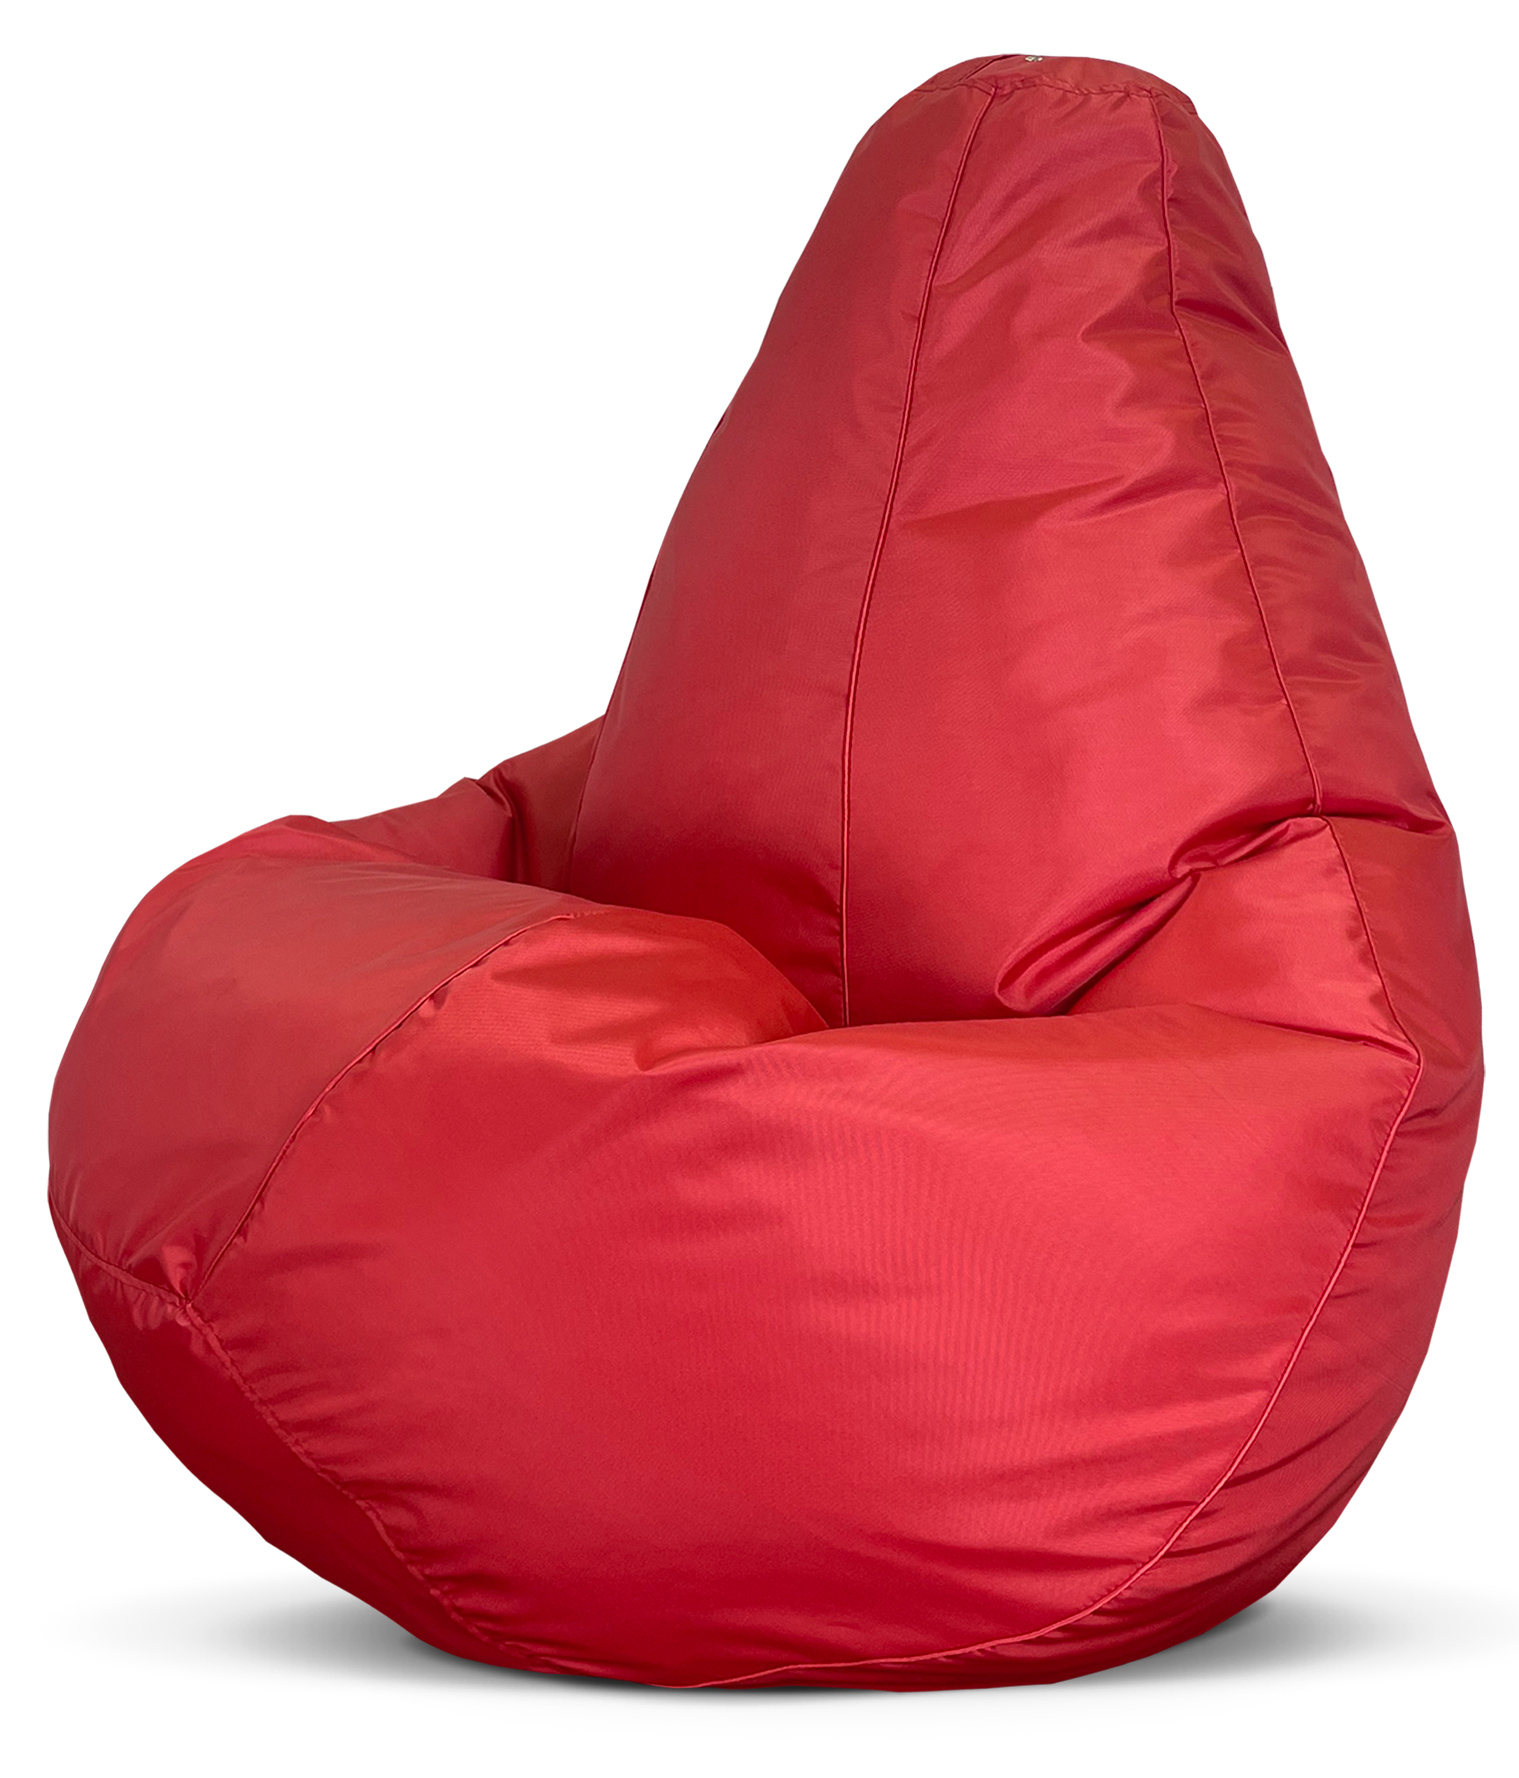 фото Кресло-мешок puflove пуфик груша, размер xxxl, красный оксфорд